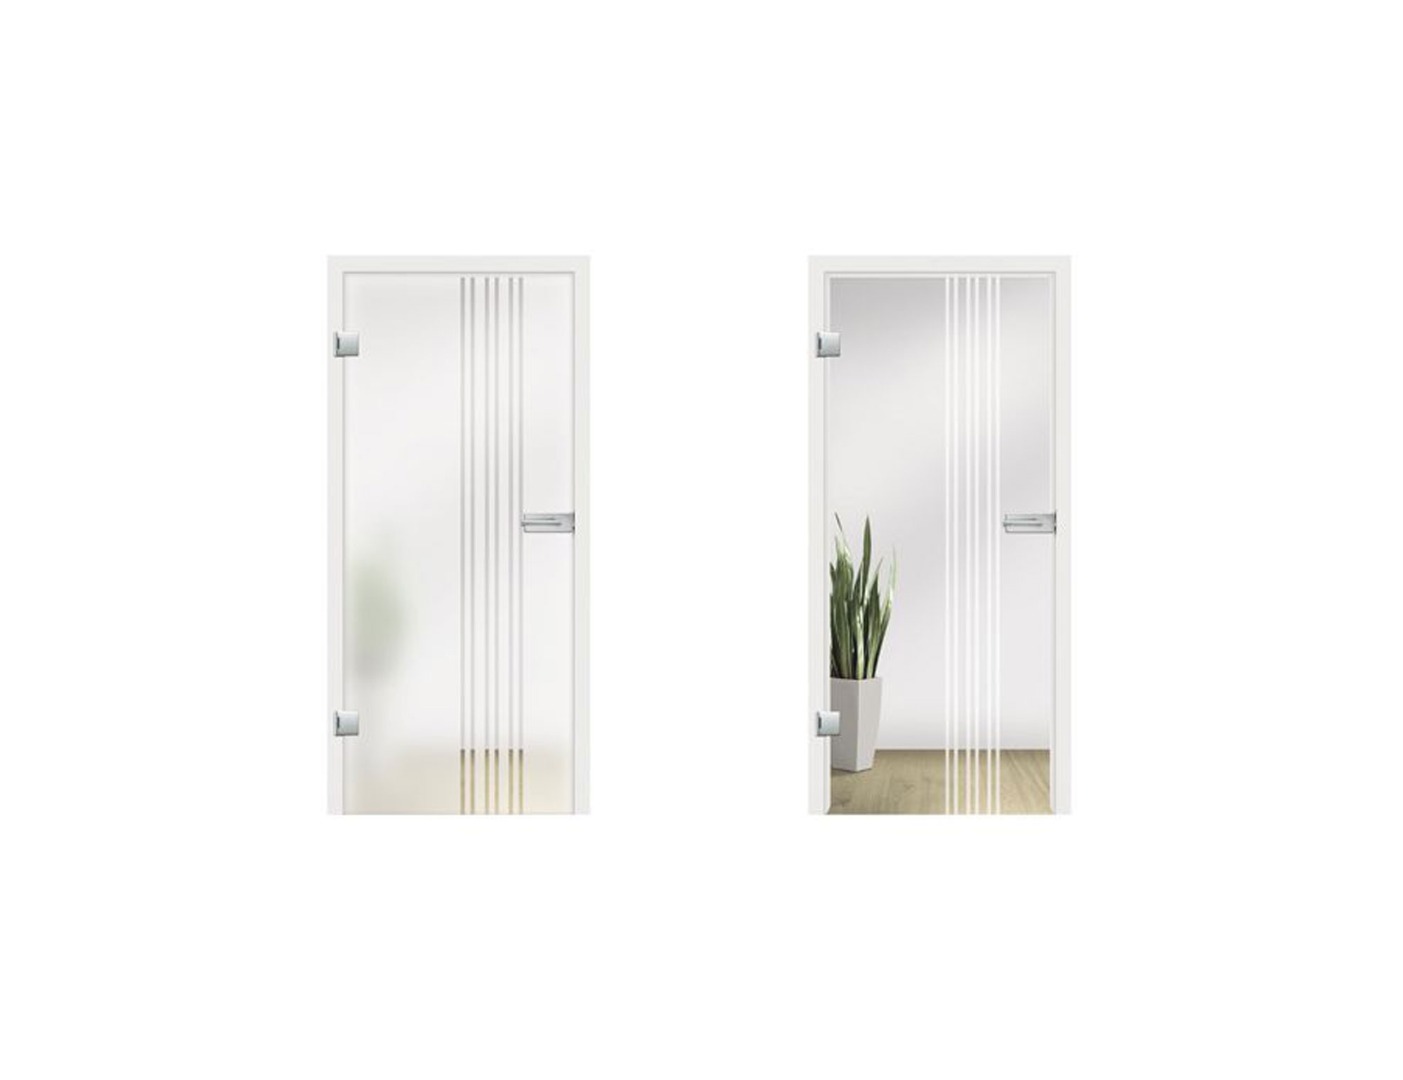 Piano Glass Door Design - Bespoke Glass Doors